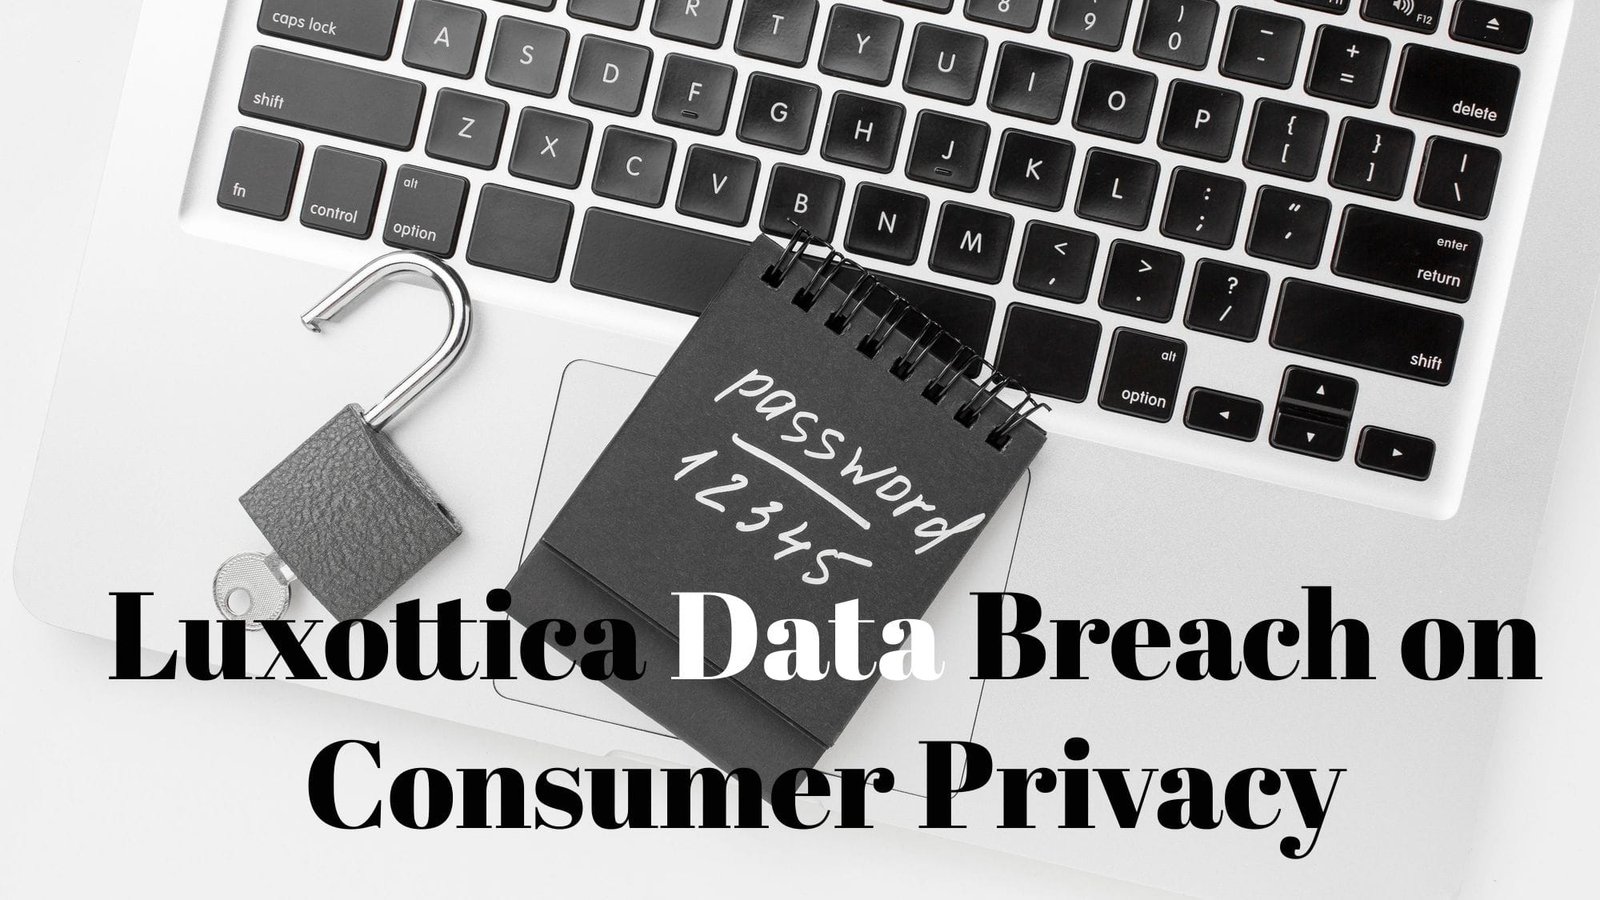 Impact of the Luxottica Data Breach on Consumer Privacy